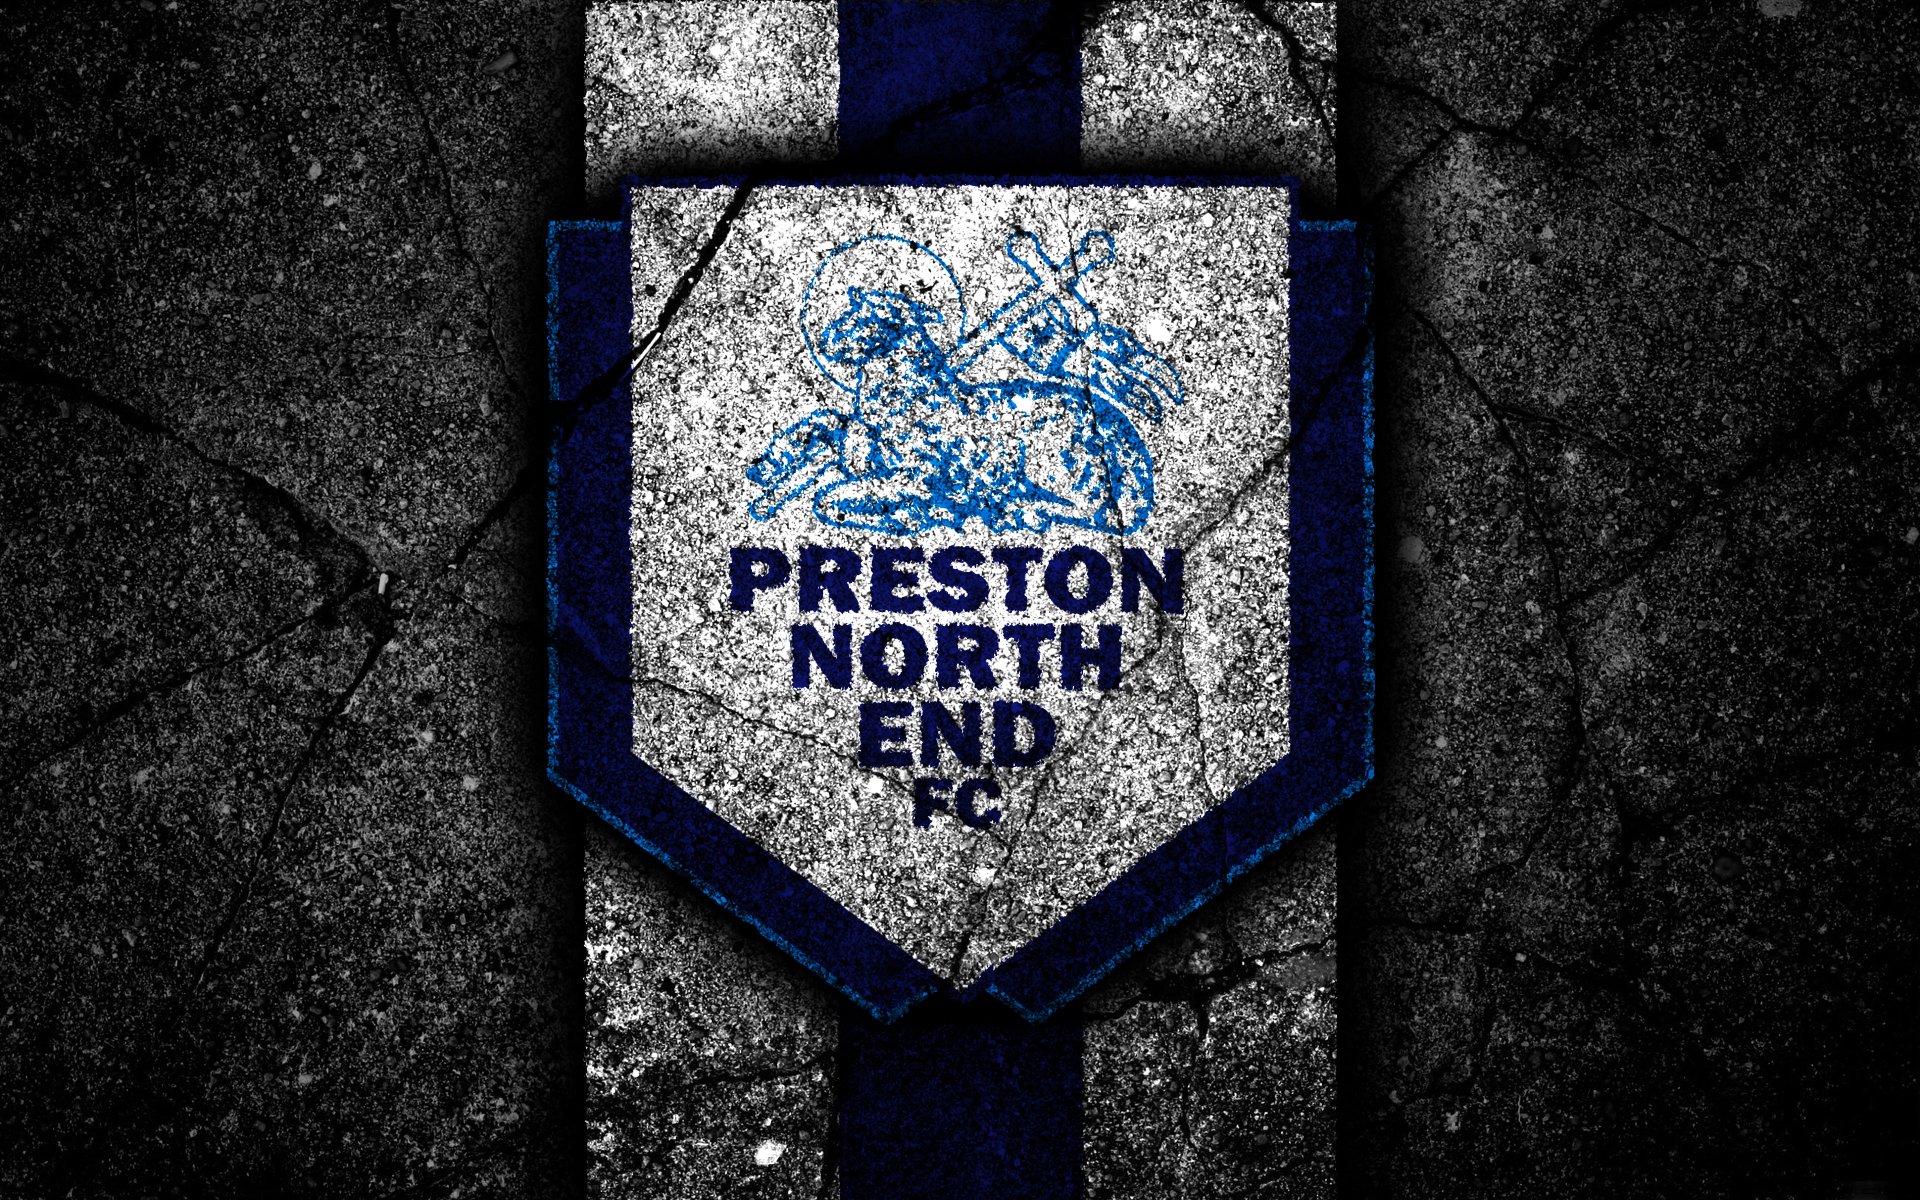 Sports Preston North End F.c. 4K Ultra Hd Wallpaper